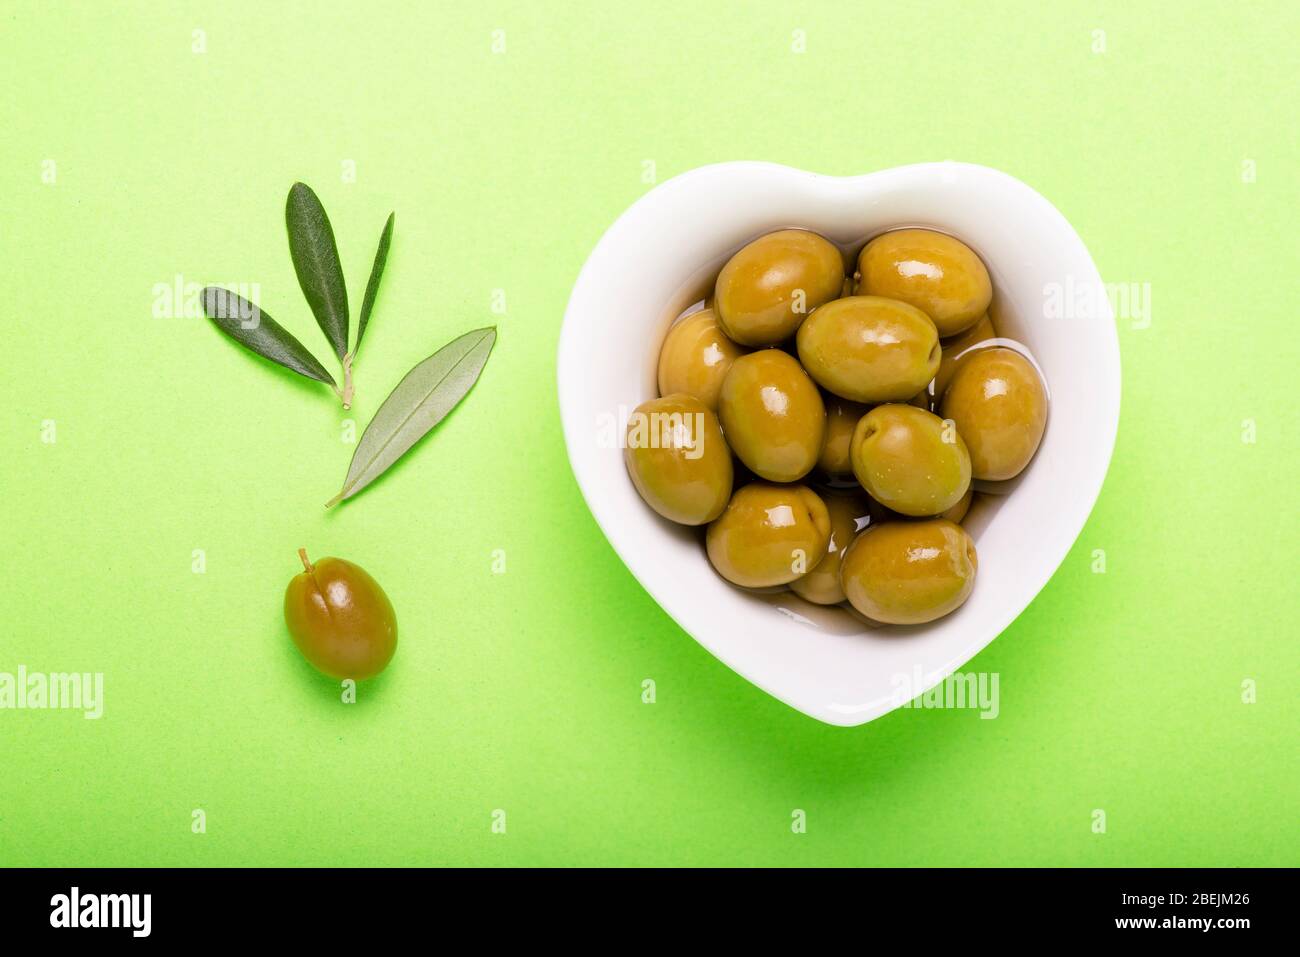 vue de dessus, sur fond vert uniforme, bol en céramique blanche en forme de coeur avec olives marinées Banque D'Images